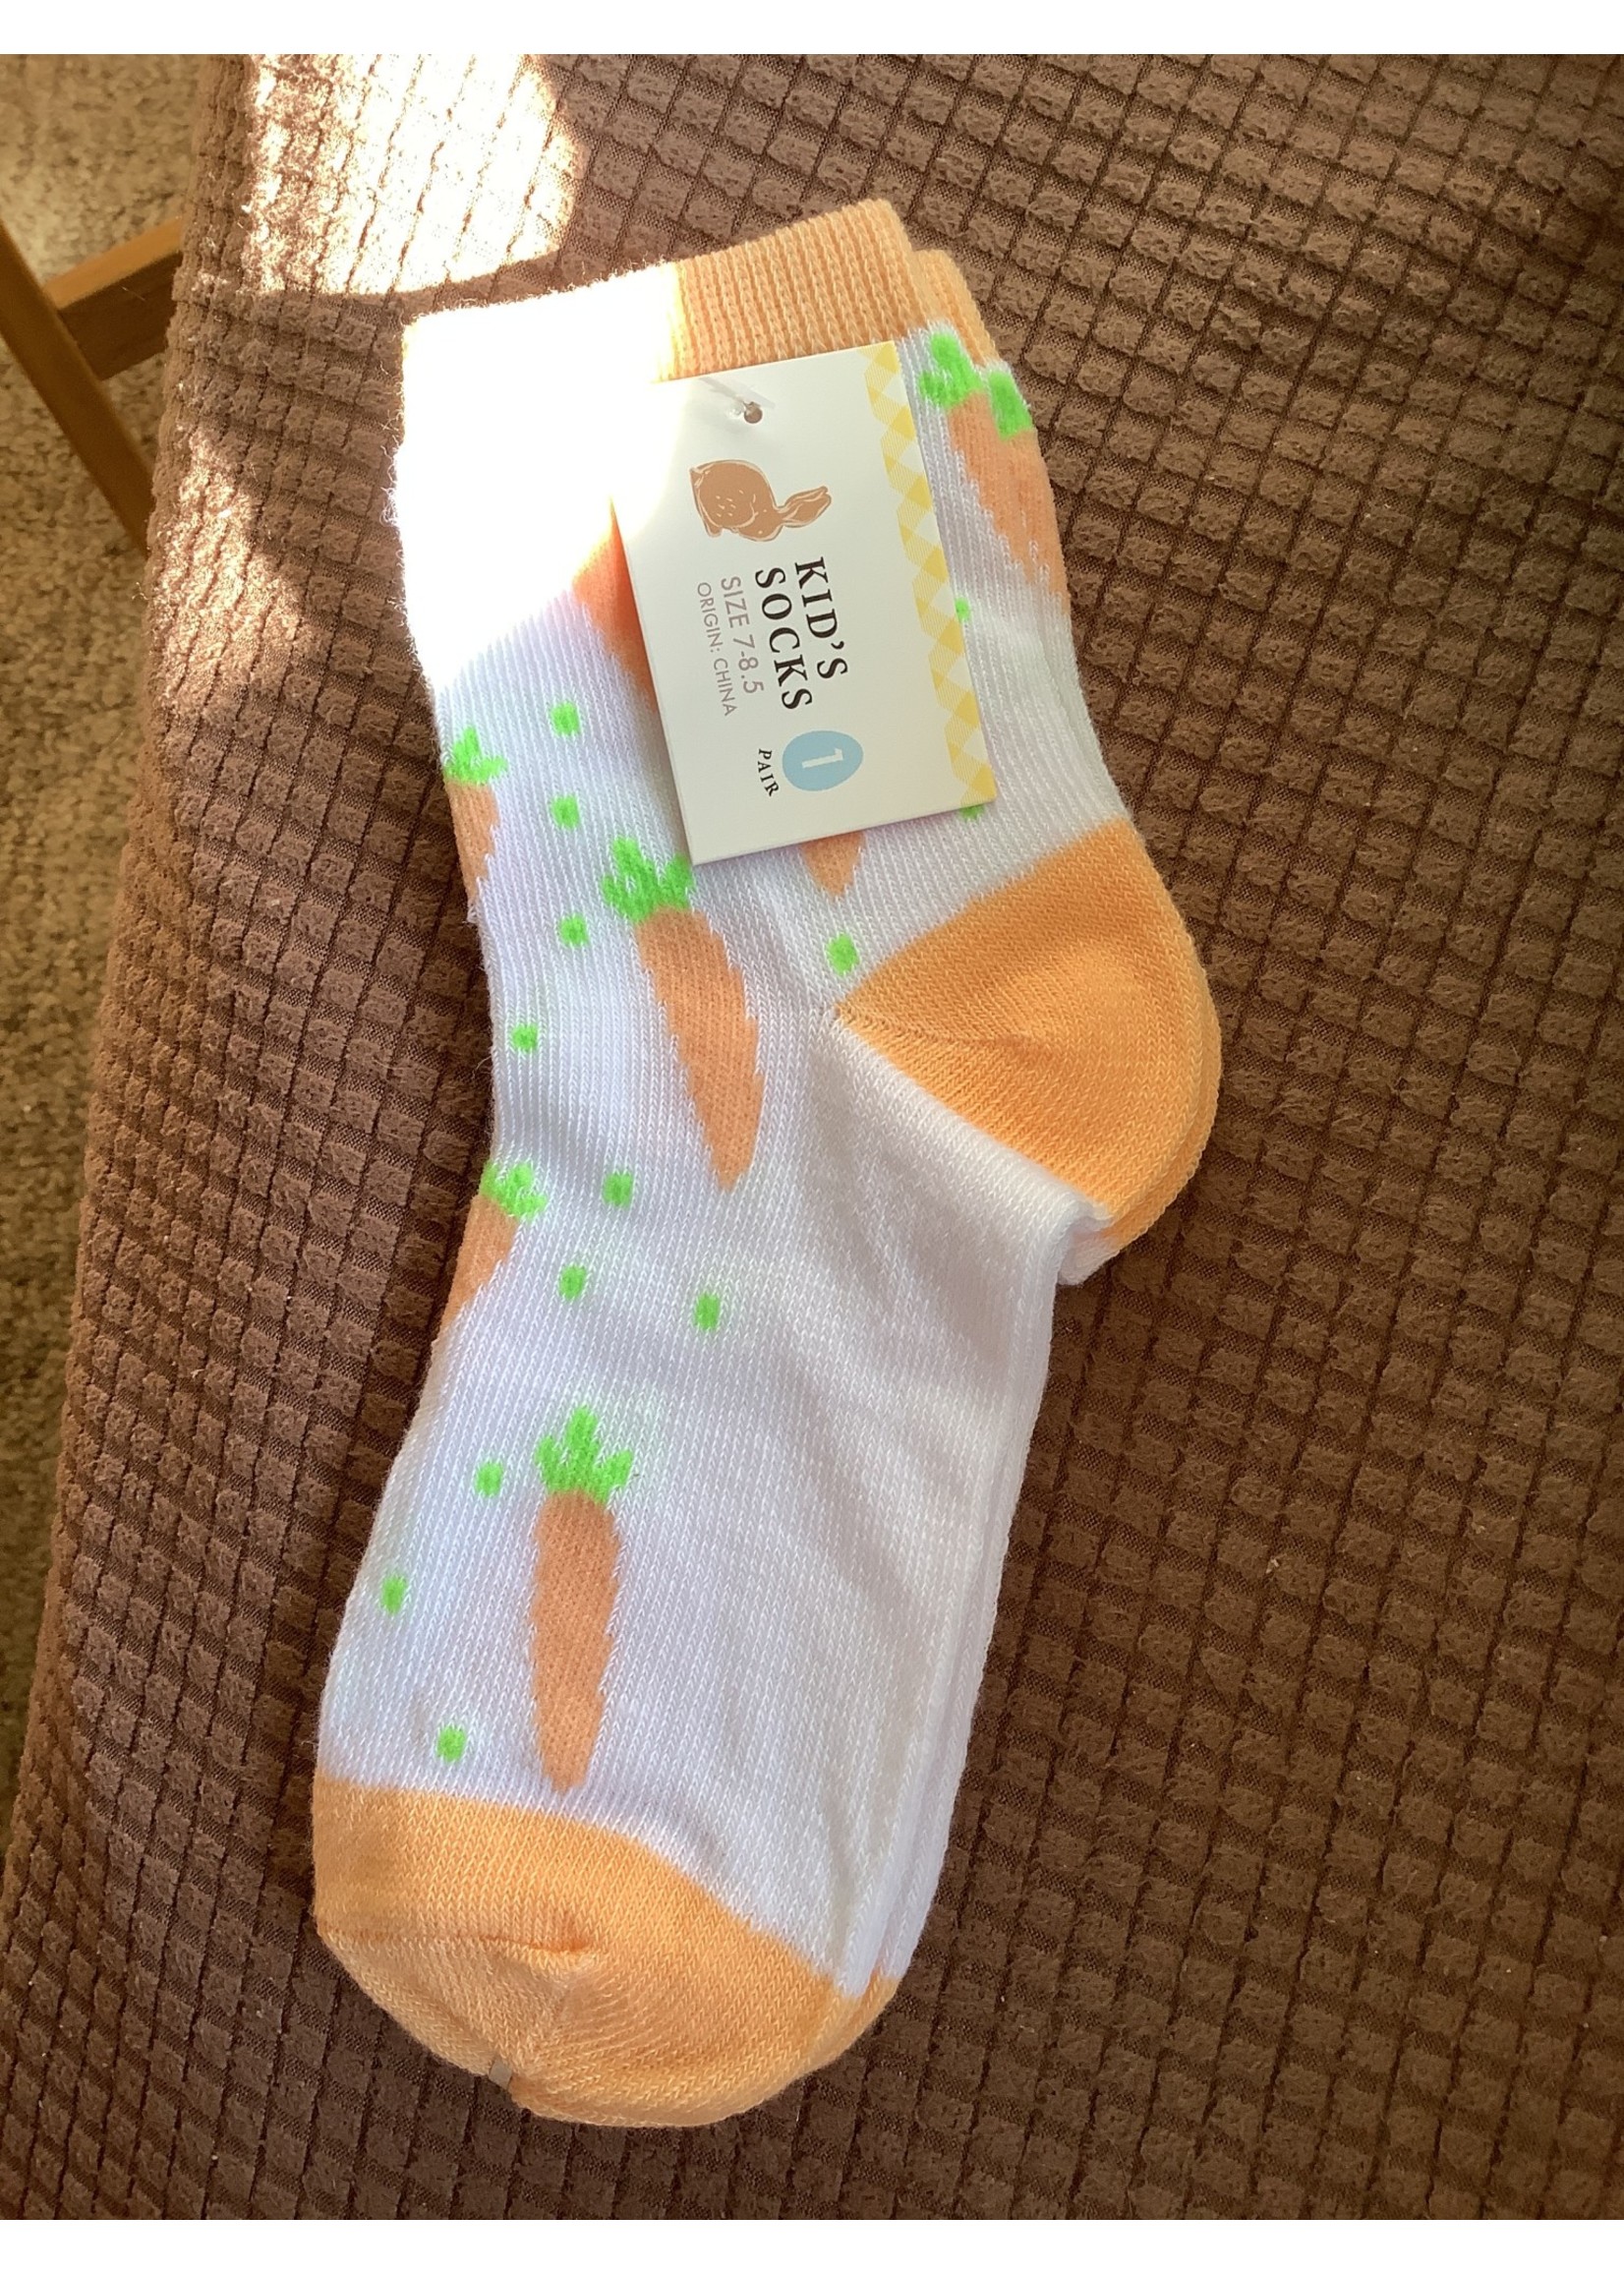 Kid’s Easter socks - Orange/white Carrots 7-8.5